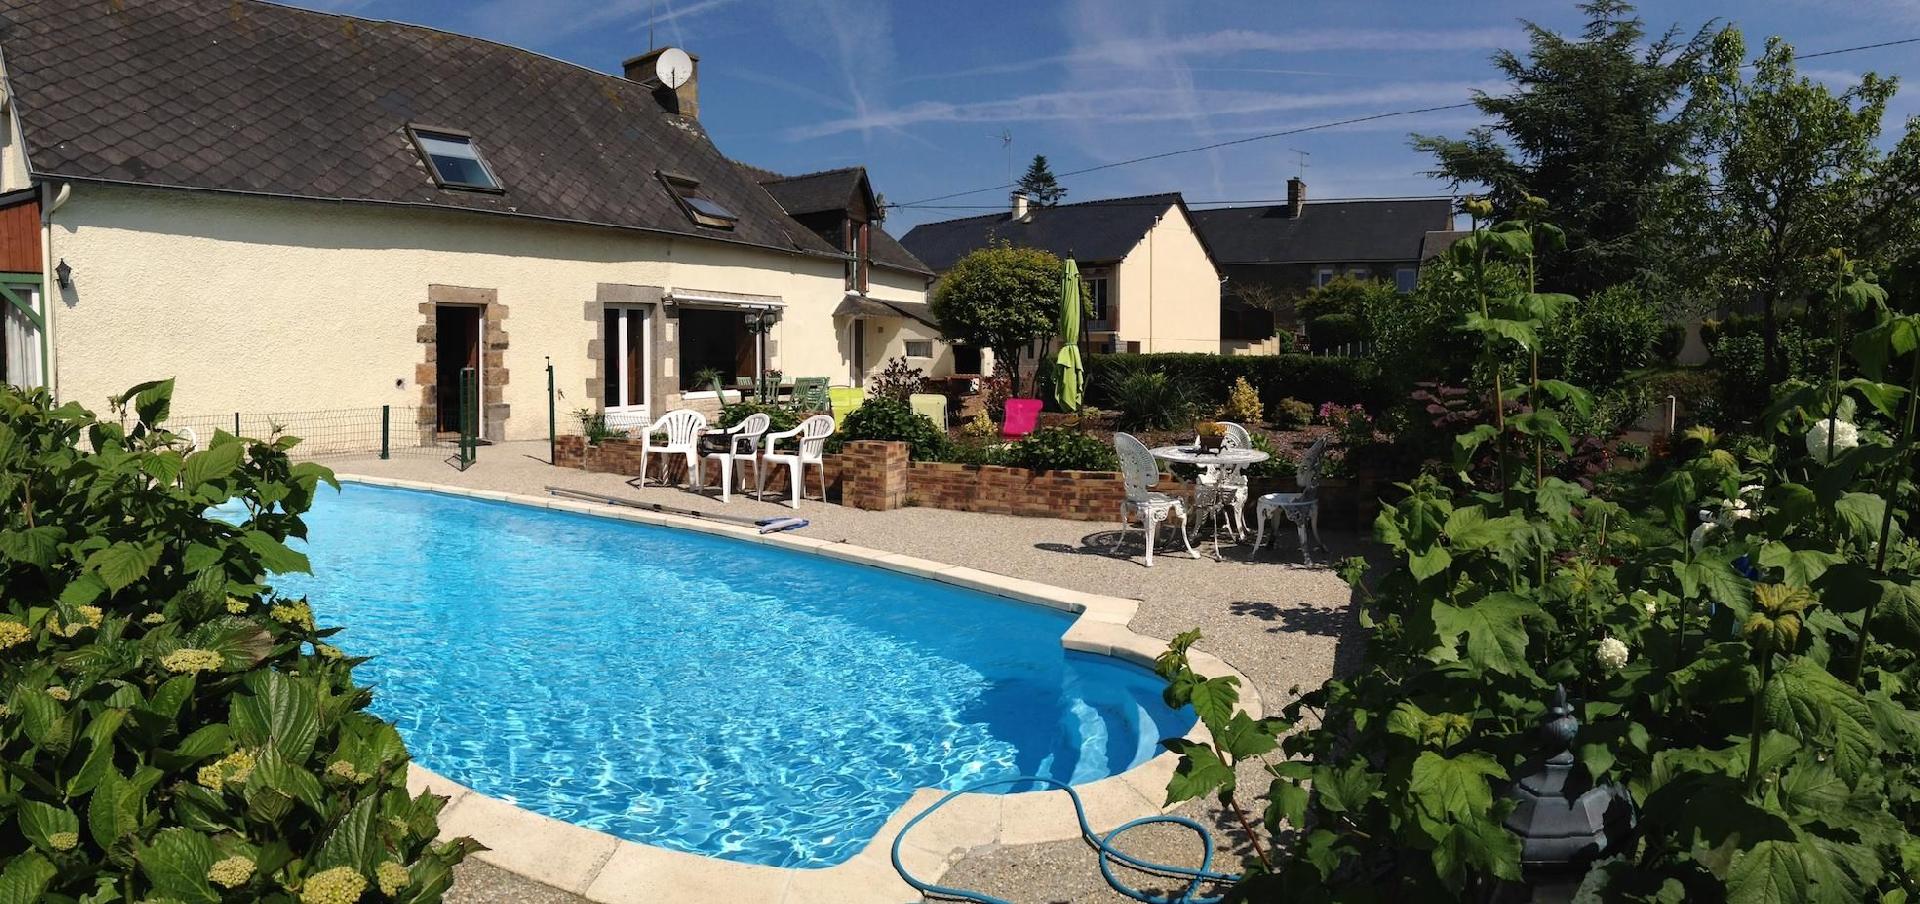 Ferienhaus mit Garten und eigenem Pool, in der N&a Ferienhaus in Frankreich